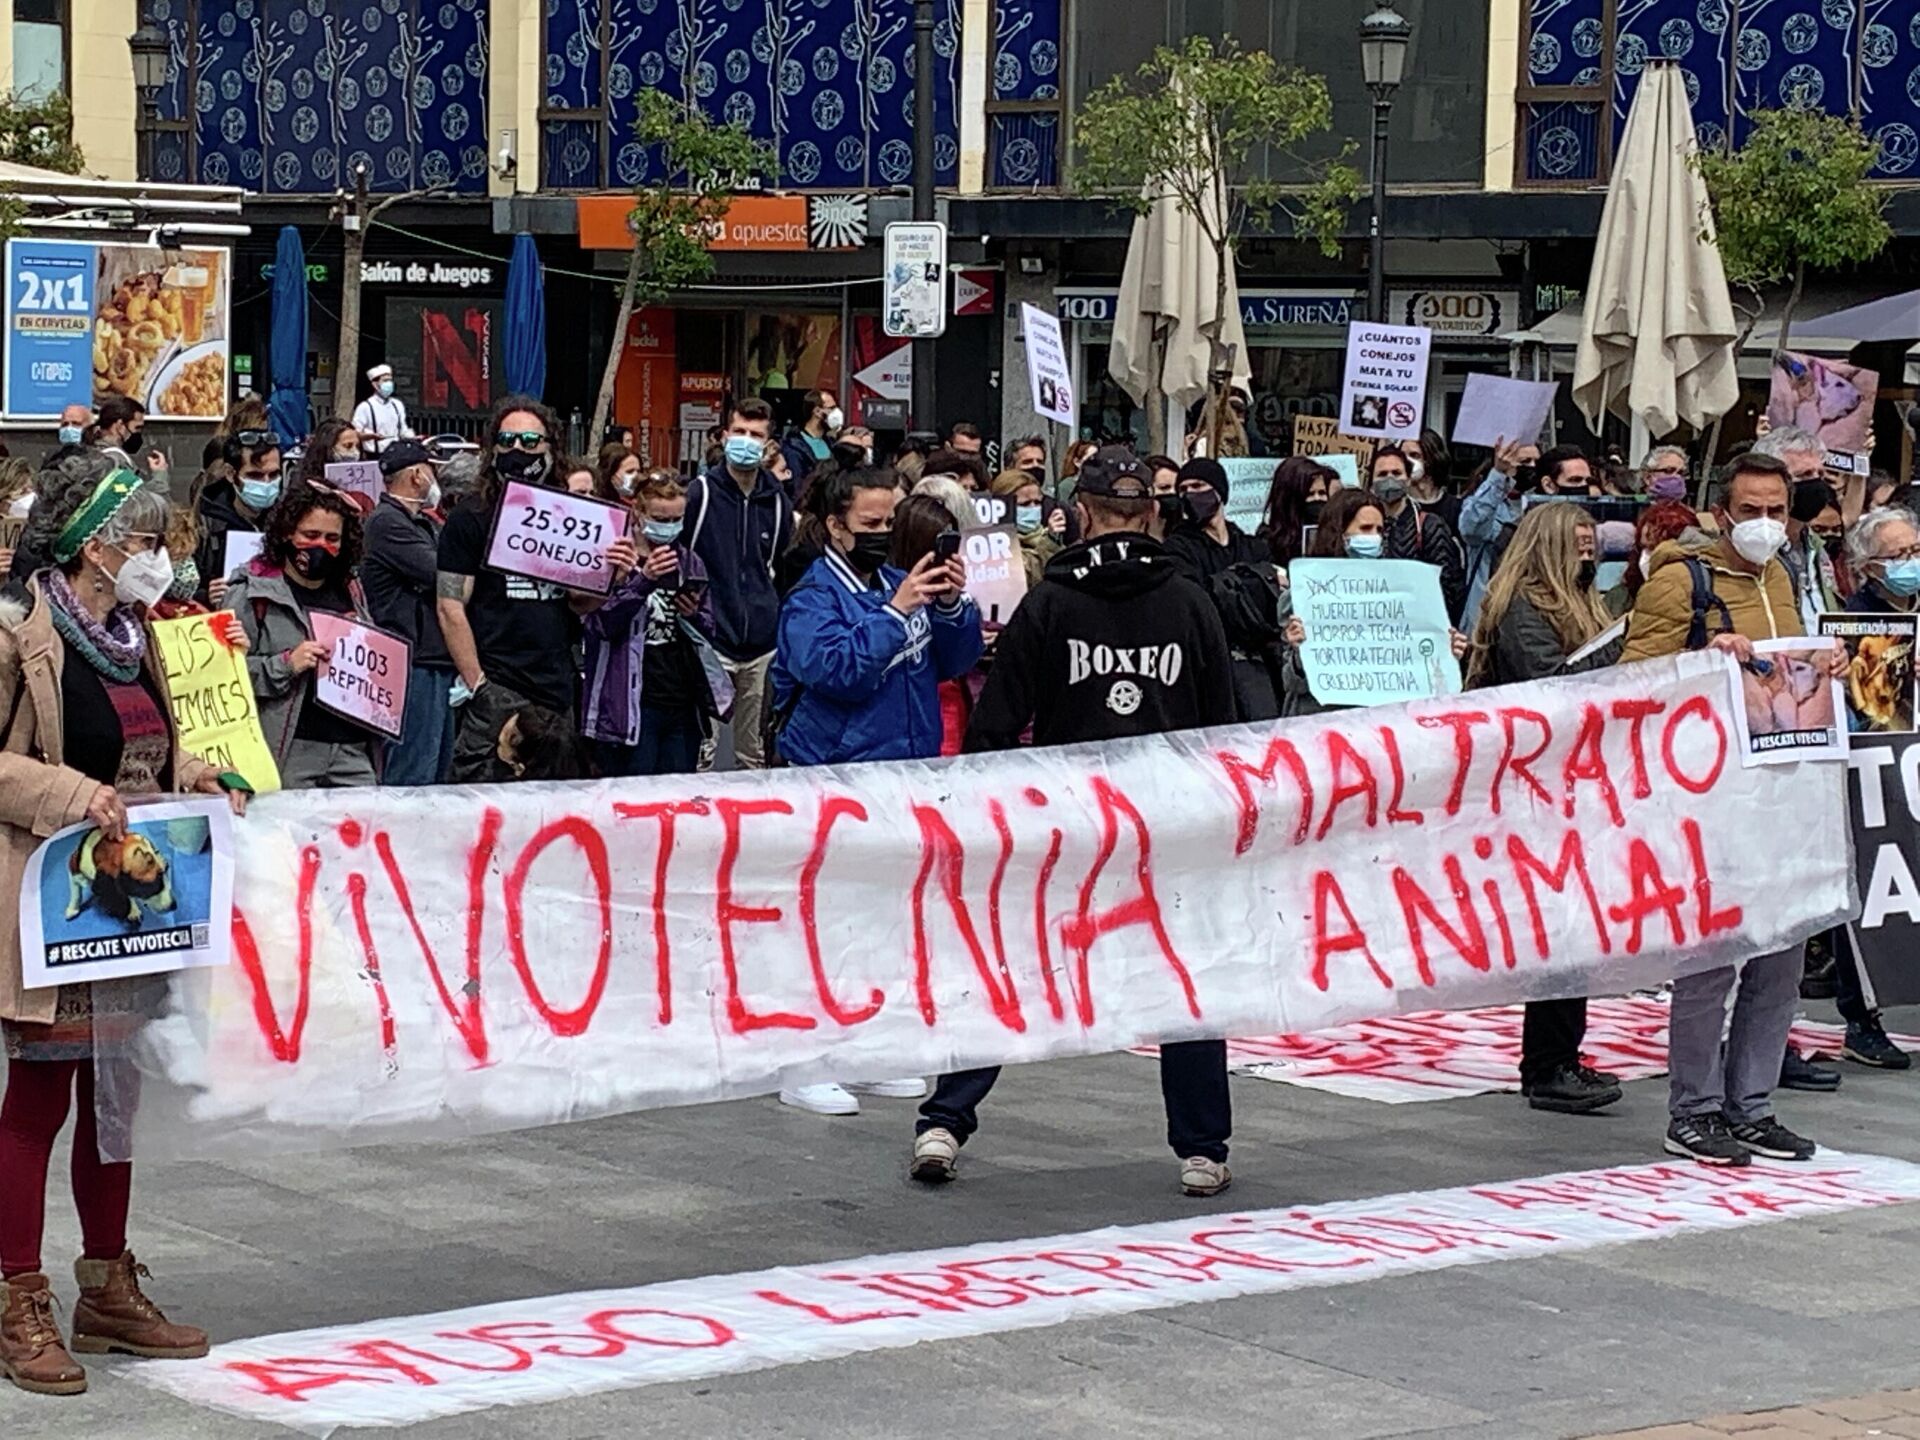 Акция протеста в Мадриде против использования животных в лабораторных исследованиях  - РИА Новости, 1920, 24.04.2021